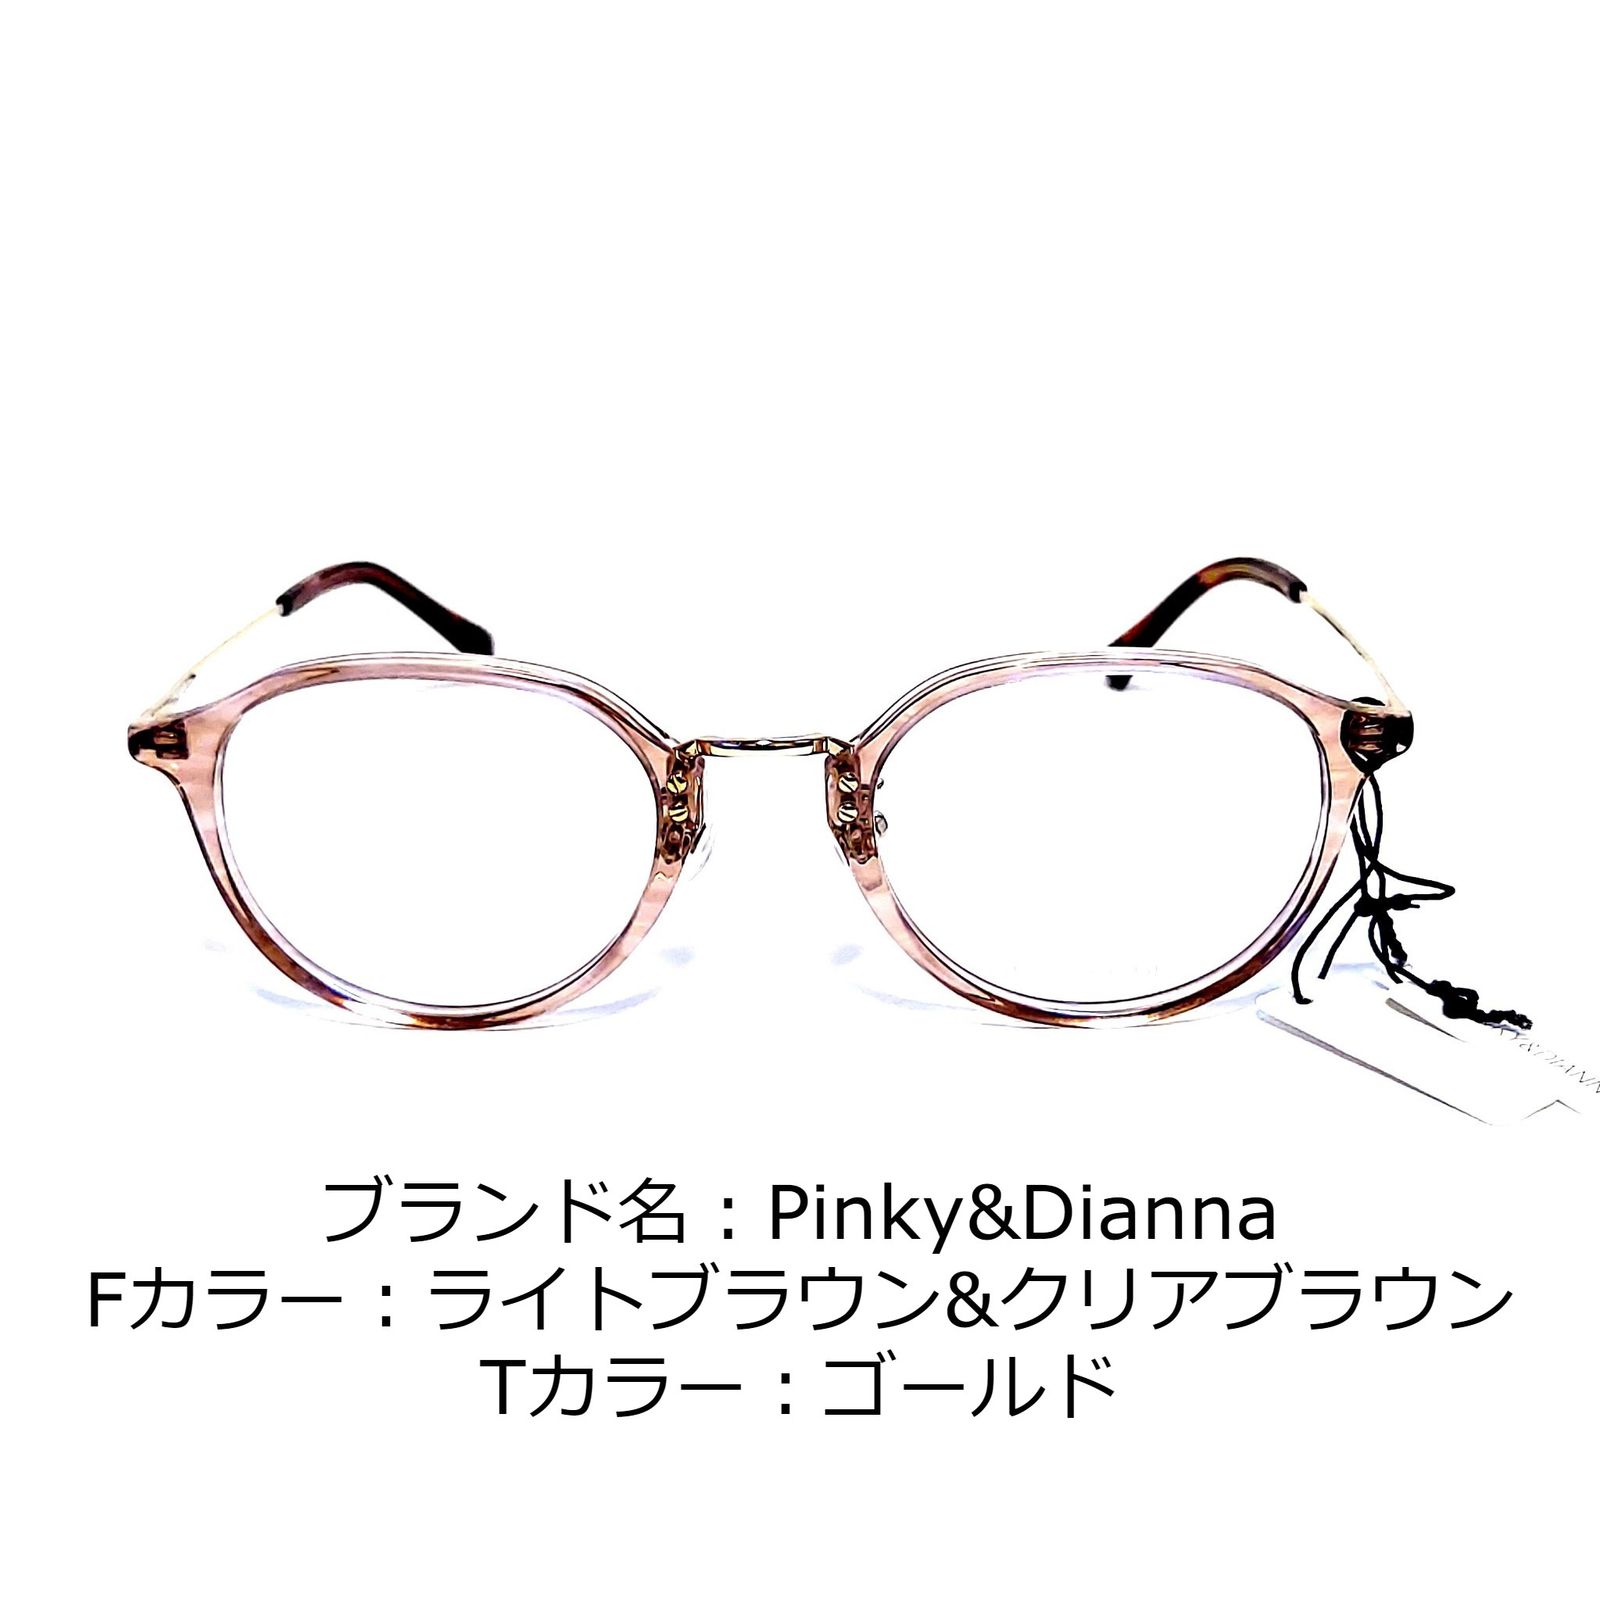 ブラウン×ピンク No.1320-メガネ Pinky&Dianne【フレームのみ価格